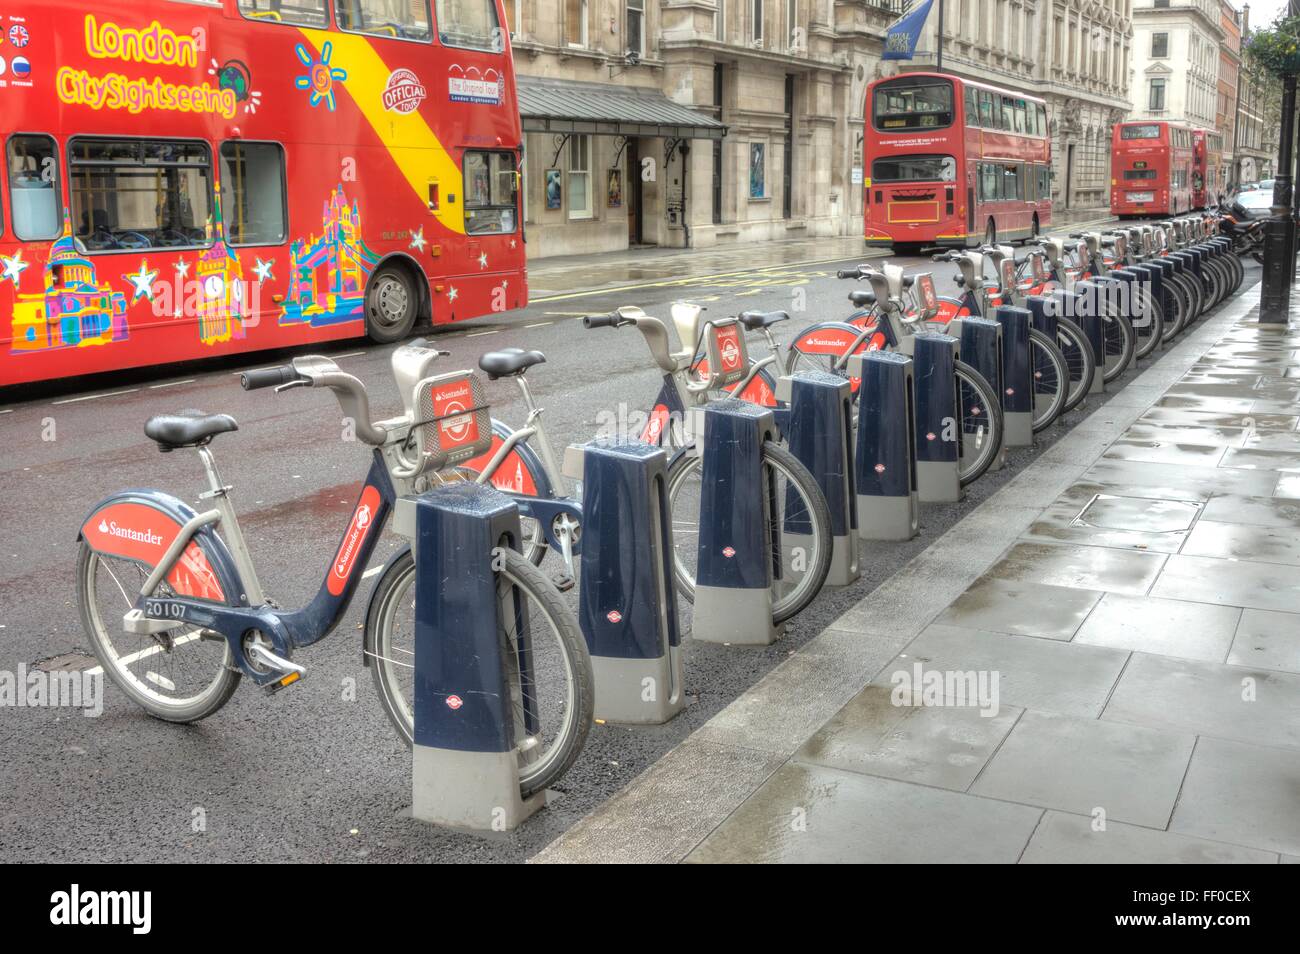 Santander Cycles, Hire cycles London Stock Photo